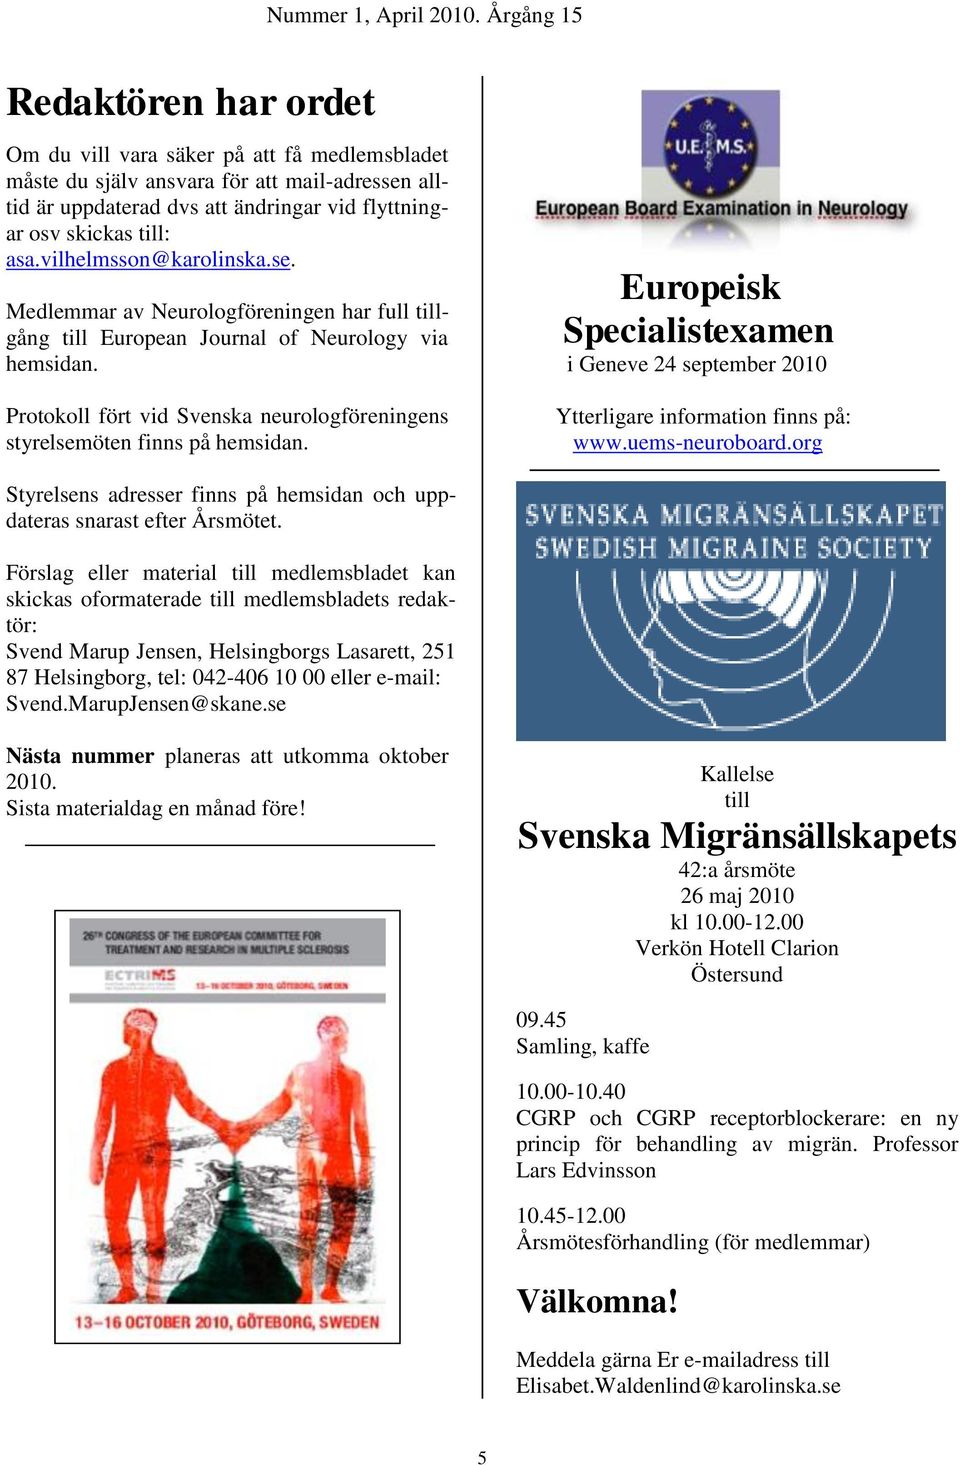 Protokoll fört vid Svenska neurologföreningens styrelsemöten finns på hemsidan. Europeisk Specialistexamen i Geneve 24 september 2010 Ytterligare information finns på: www.uems-neuroboard.